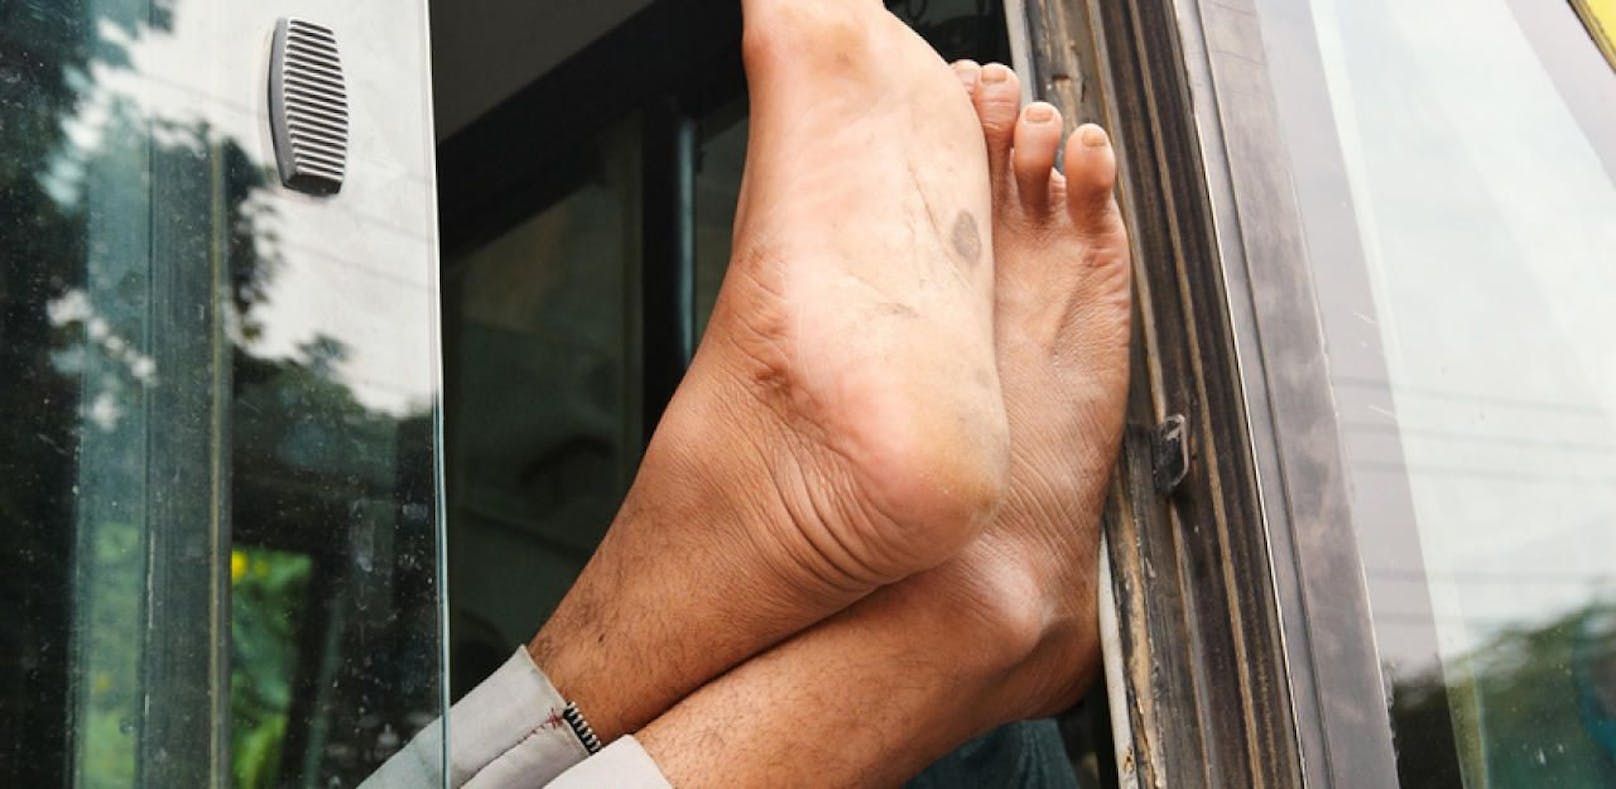 Stinkende Socken in einem Bus sorgten für einen Polizeieinsatz in Indien.